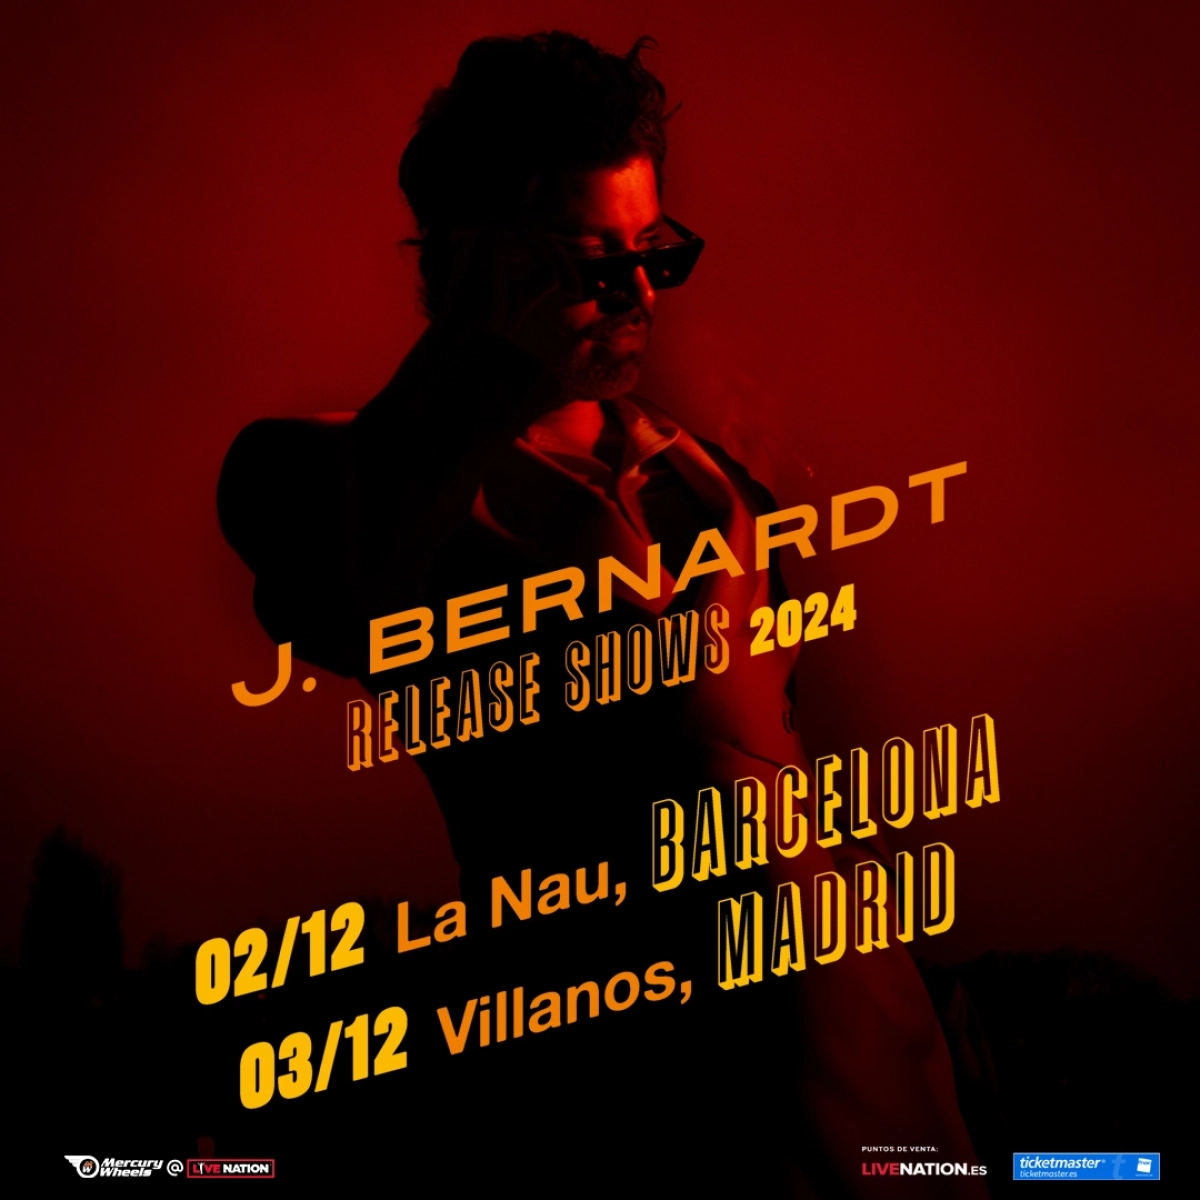 J. Bernardt in der La Nau Tickets